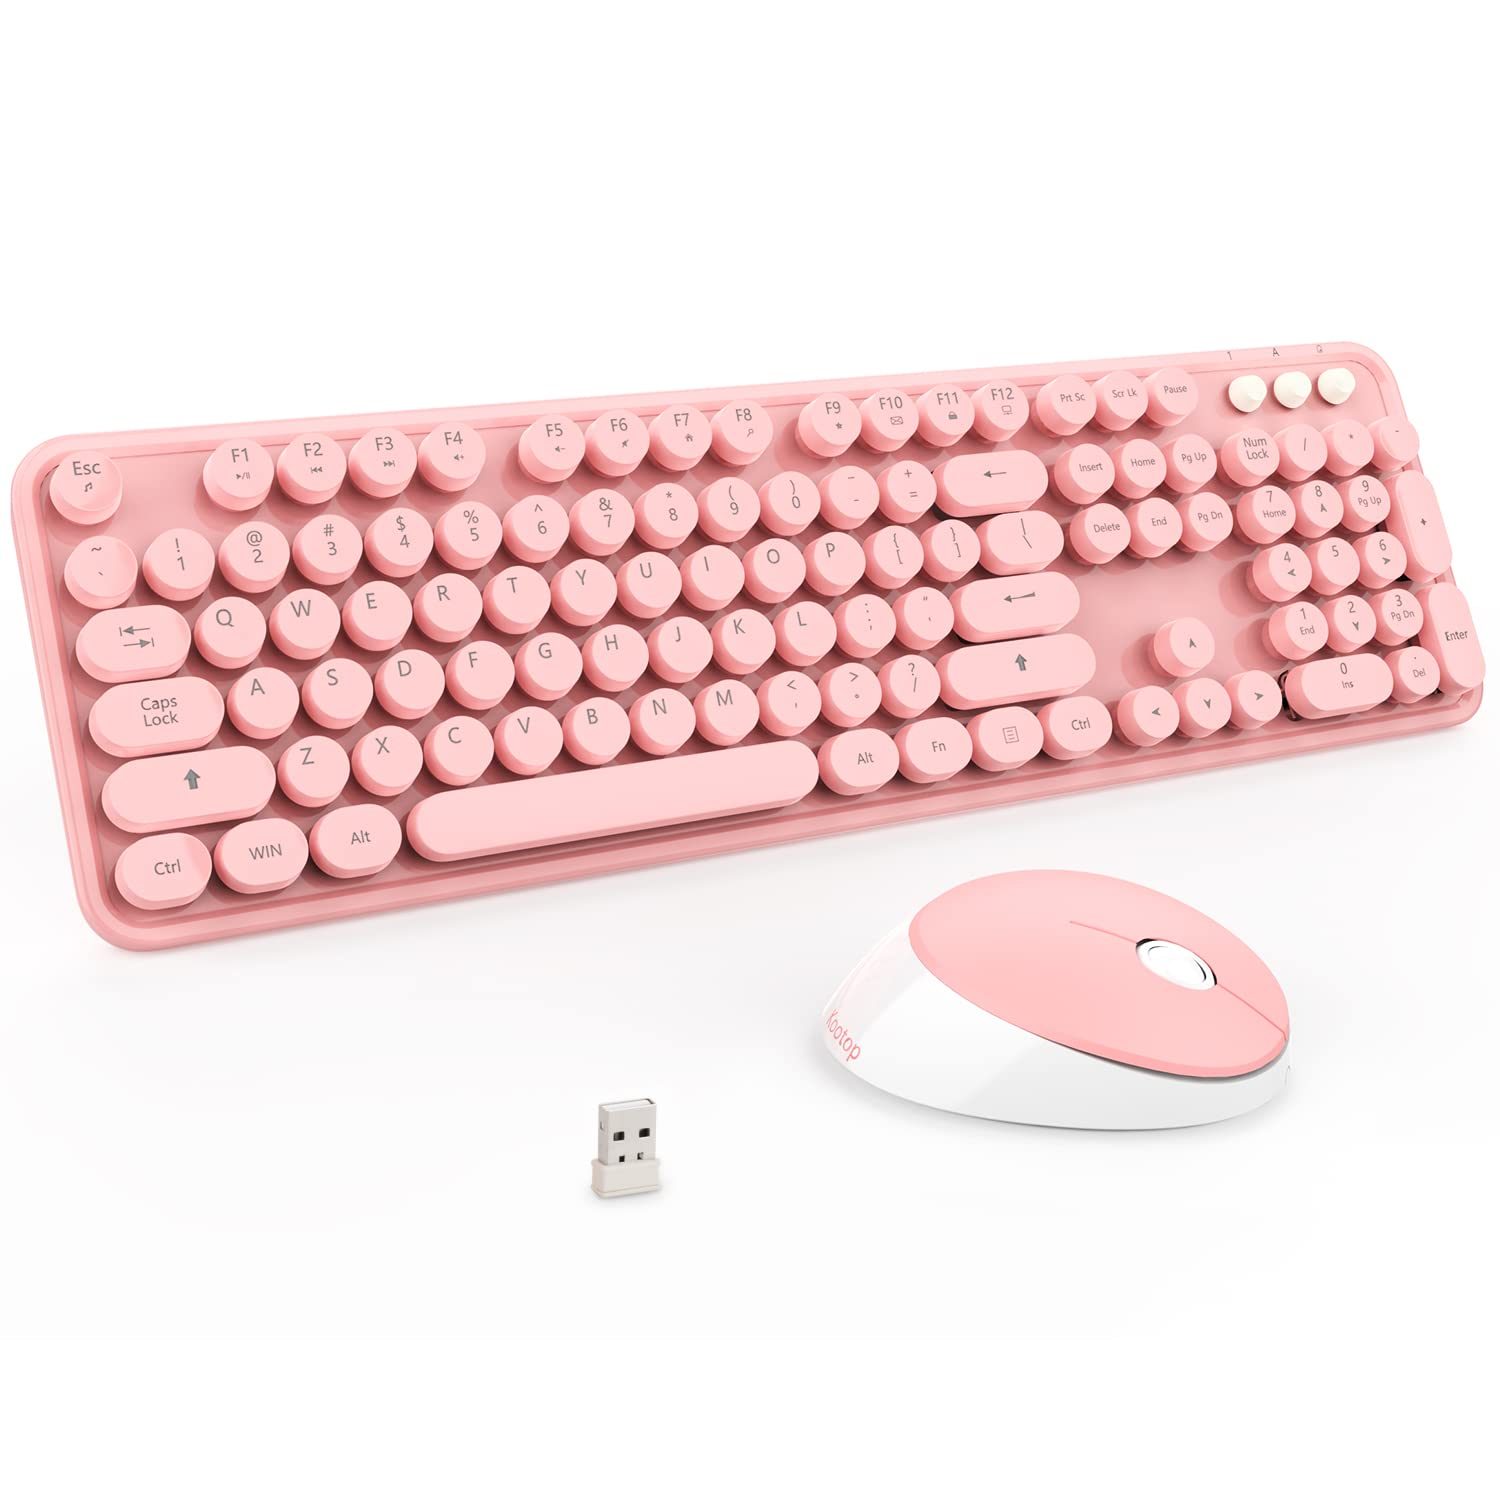 Pink Wireless Keyboard and Mouse: Bàn phím và chuột không dây màu hồng là sự lựa chọn hoàn hảo cho những người yêu màu sắc và theo đuổi phong cách trẻ trung. Hãy tận hưởng cuộc sống đầy màu sắc cùng với bàn phím và chuột màu hồng này.